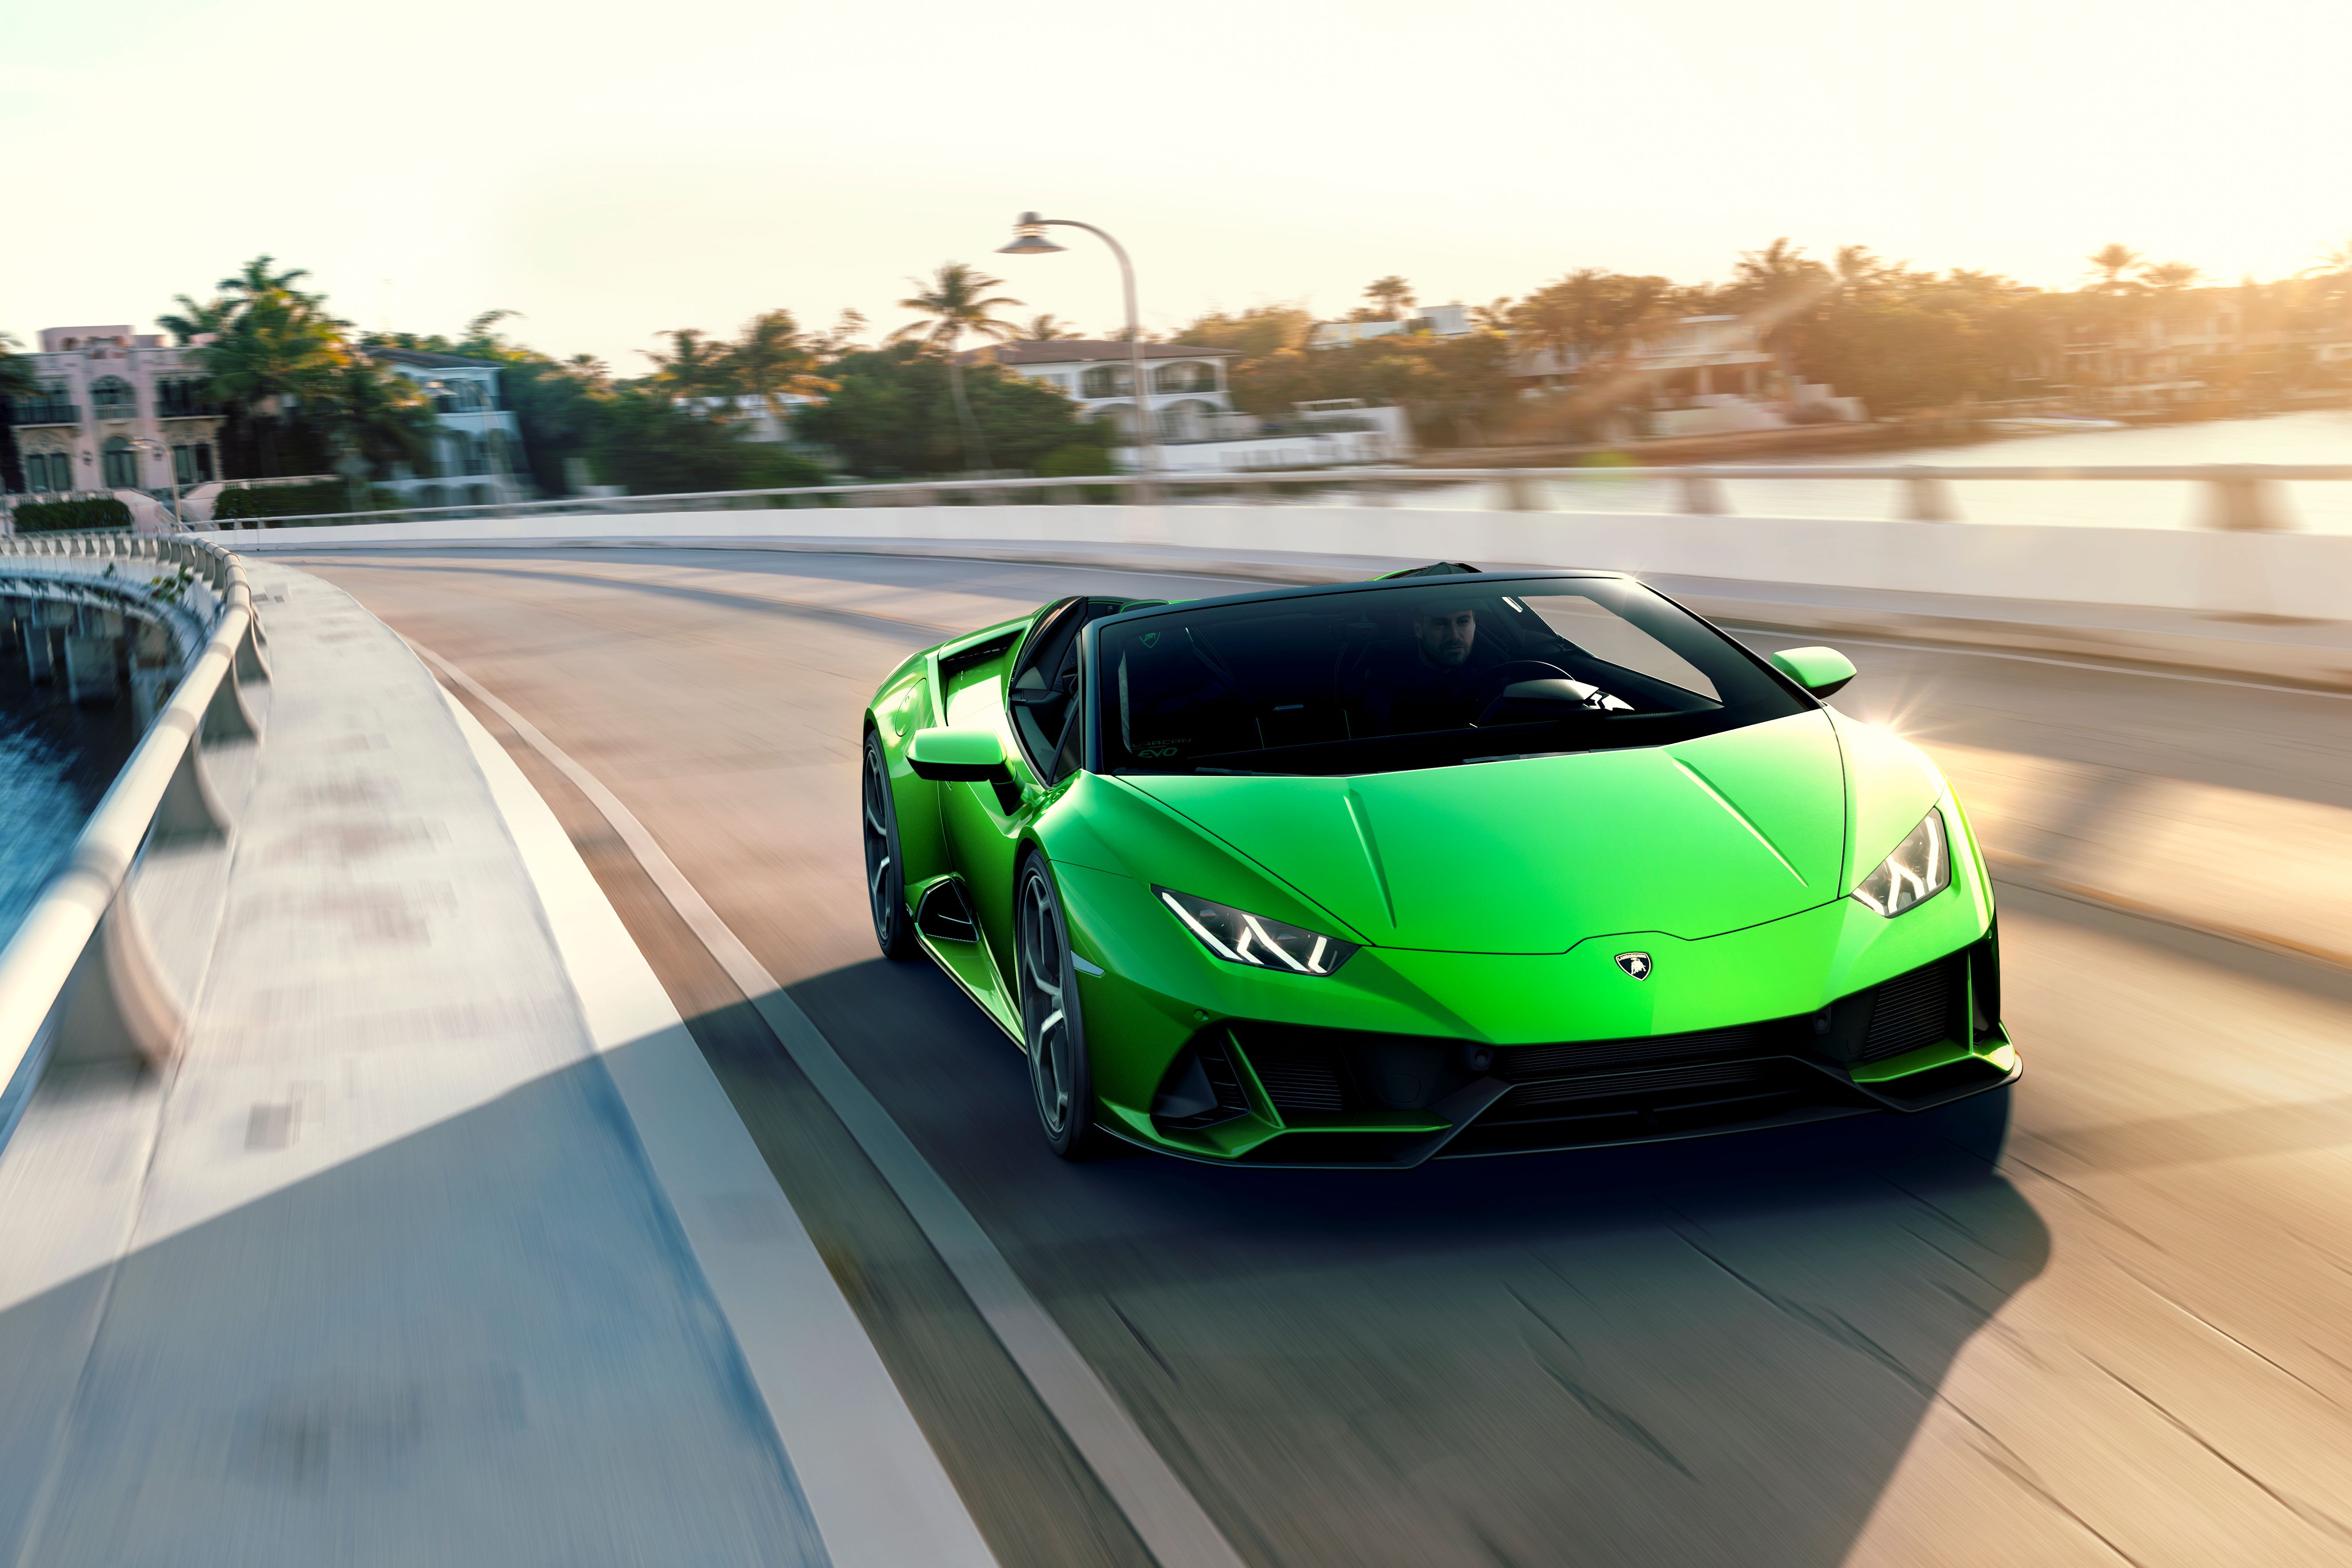 Who Owns the Lamborghini Company?